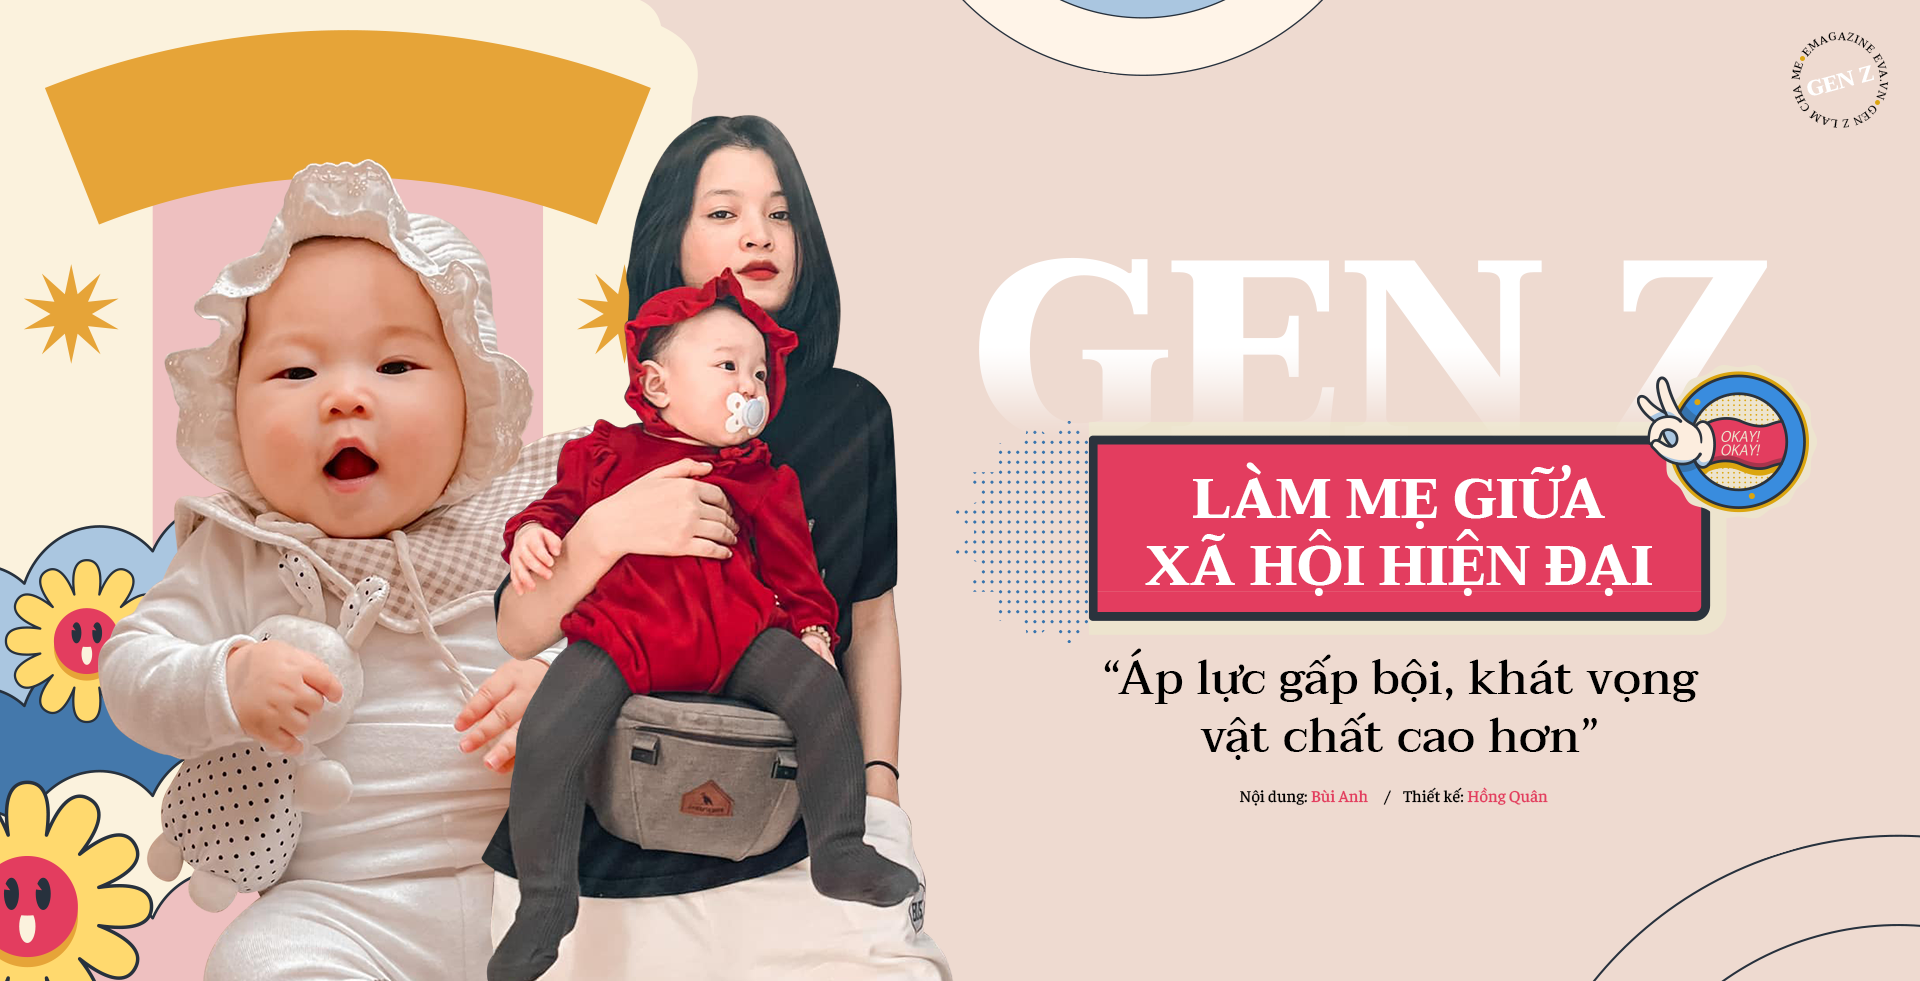 GenZ làm mẹ giữa xã hội hiện đại: “Áp lực gấp bội, khát vọng vật chất cao hơn” - 1